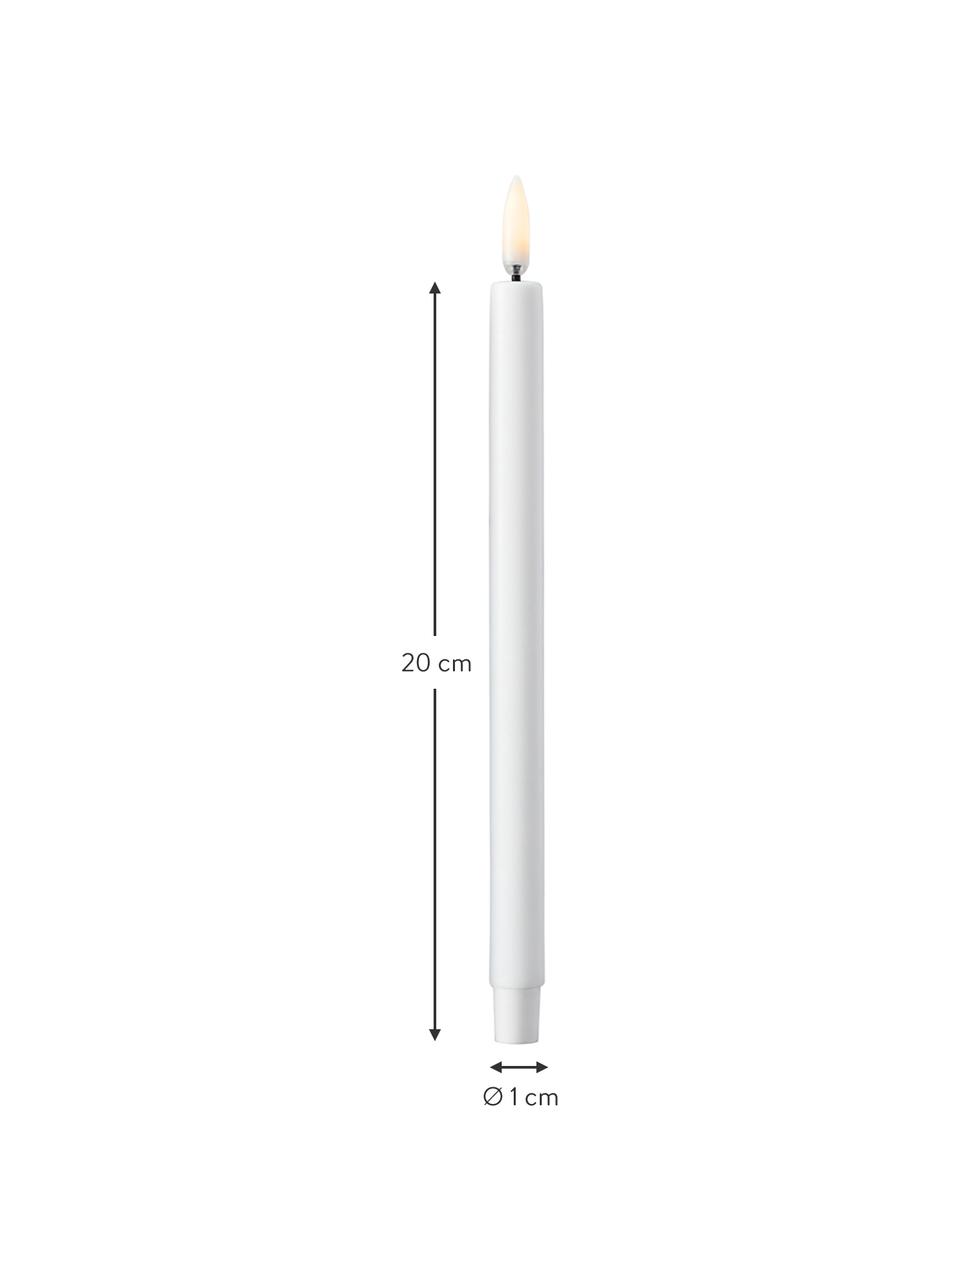 LED steekkaarsen Uyuni Lighting, 2 stuks, Kunststof, Wit, Ø 1 x H 20 cm